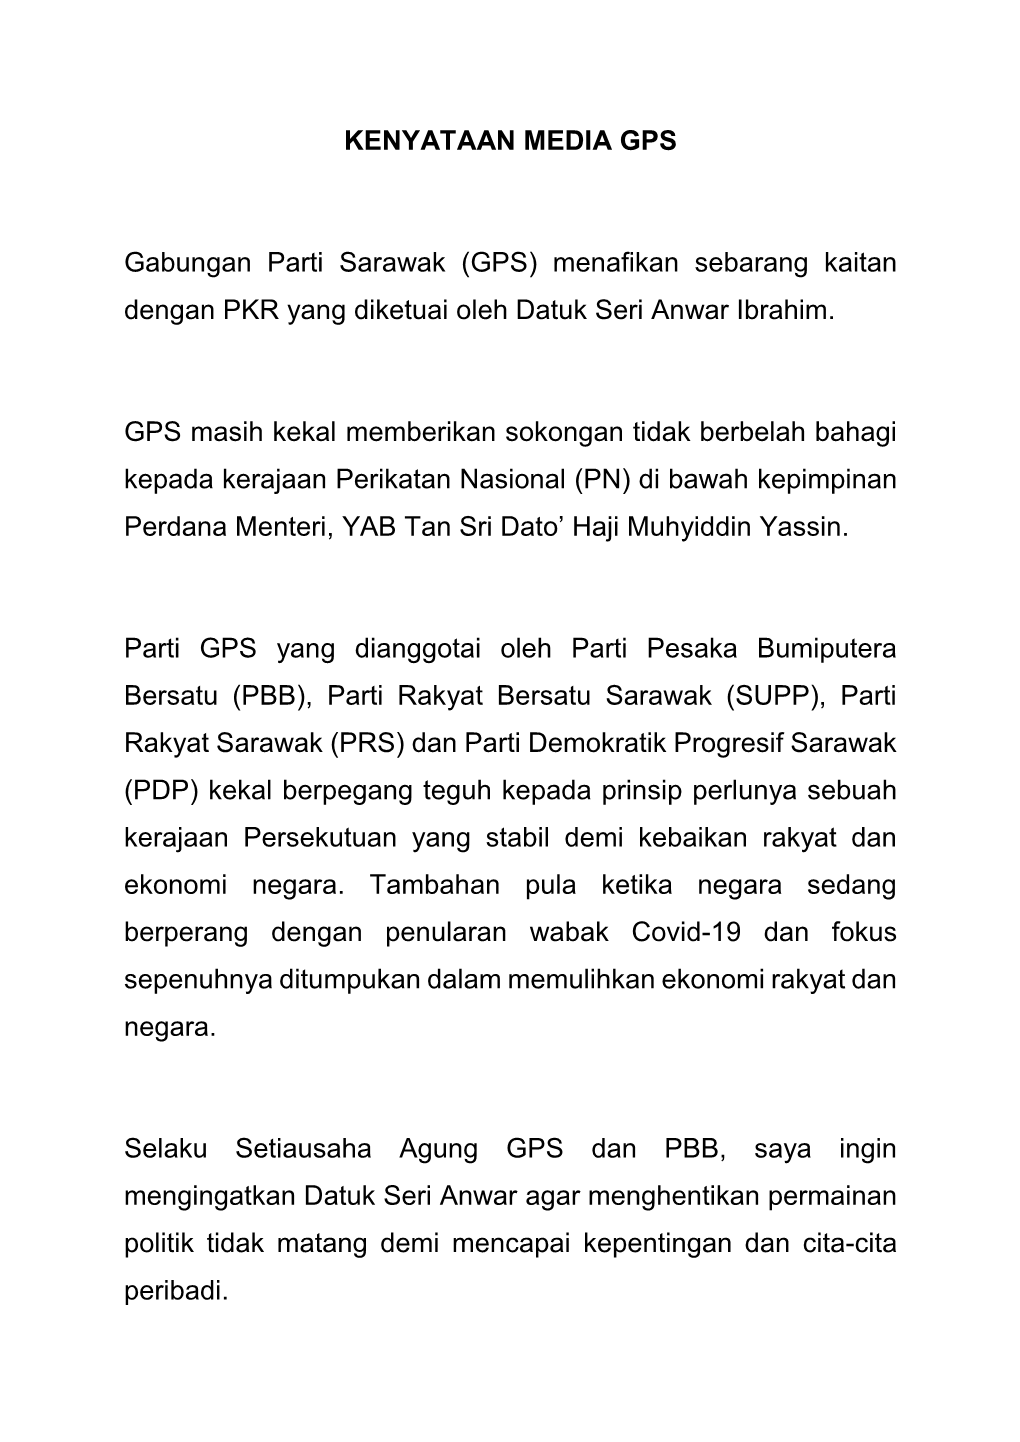 KENYATAAN MEDIA GPS Gabungan Parti Sarawak (GPS) Menafikan